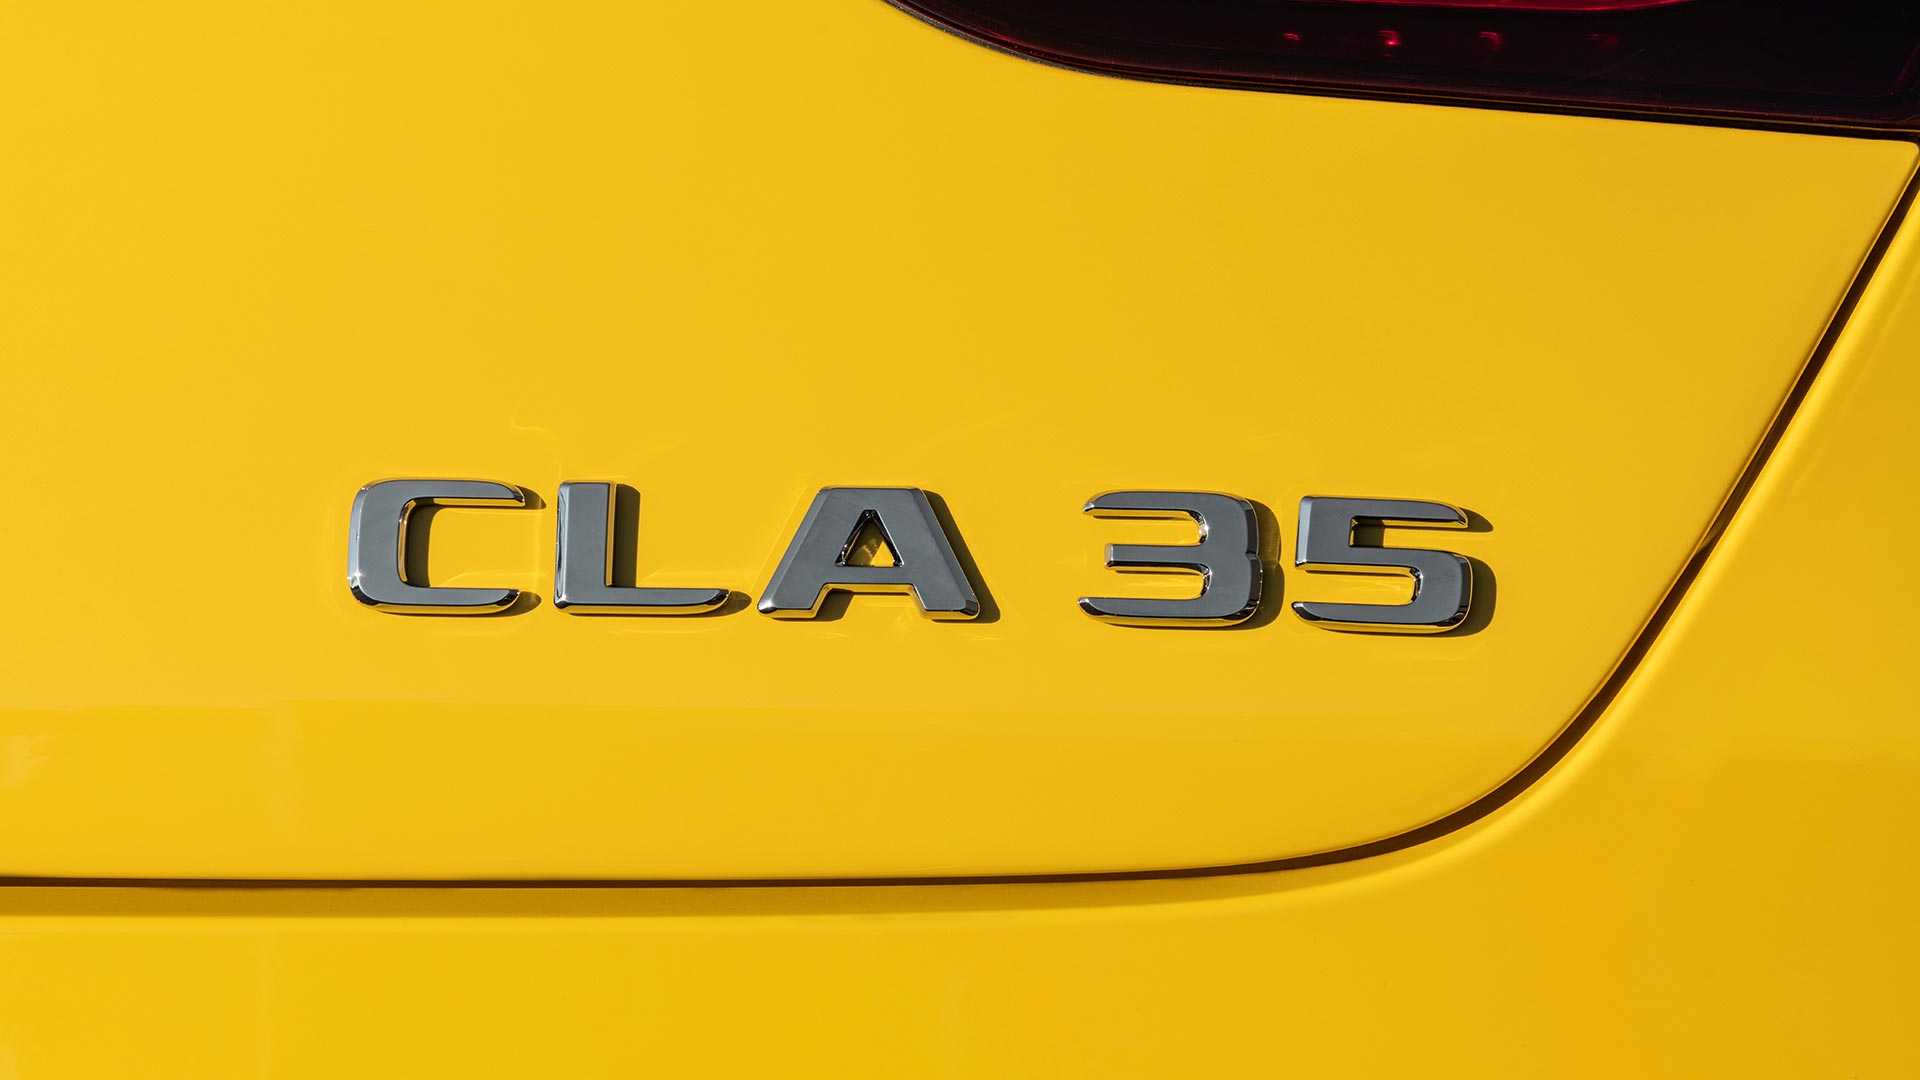 20-مرسدس بنز CLA 35 بصورت رسمی معرفی شد